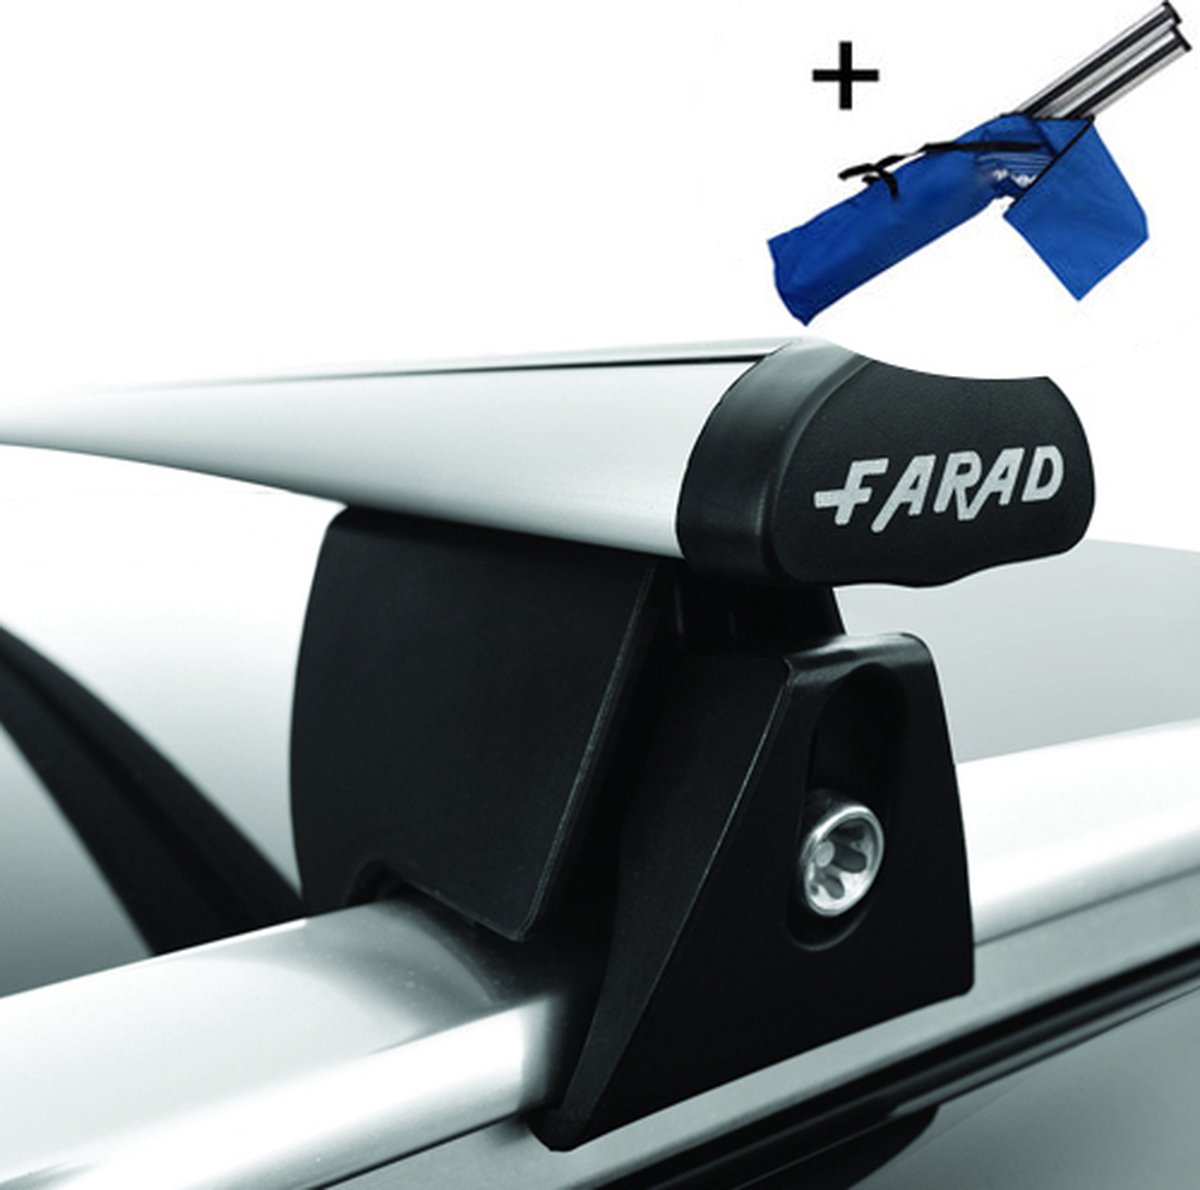 Dakdragers geschikt voor Skoda Fabia Wagon Stationwagon vanaf 2015 - Aluminium inclusief dakdrager opbergtas